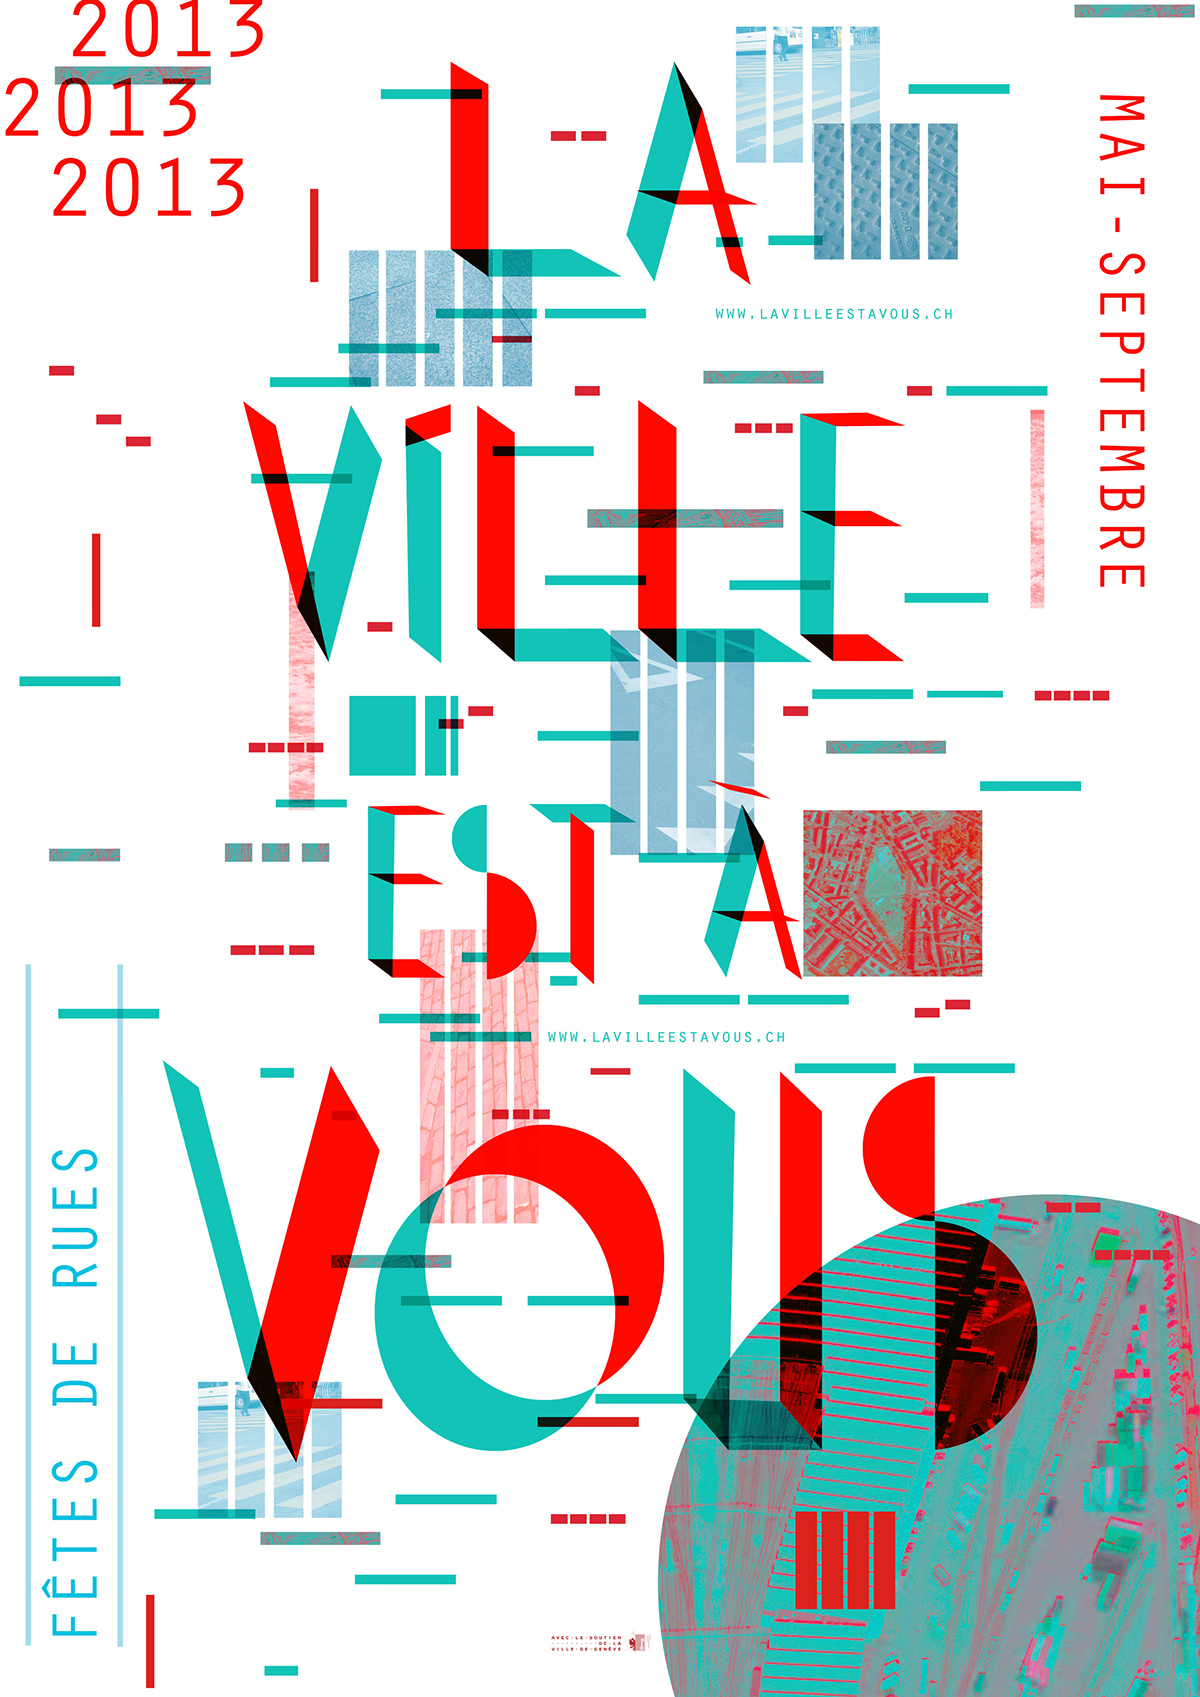 poster geneve Geneva lavilleestàvous city ville vous You Typographie swiss design affiche festival rue Street